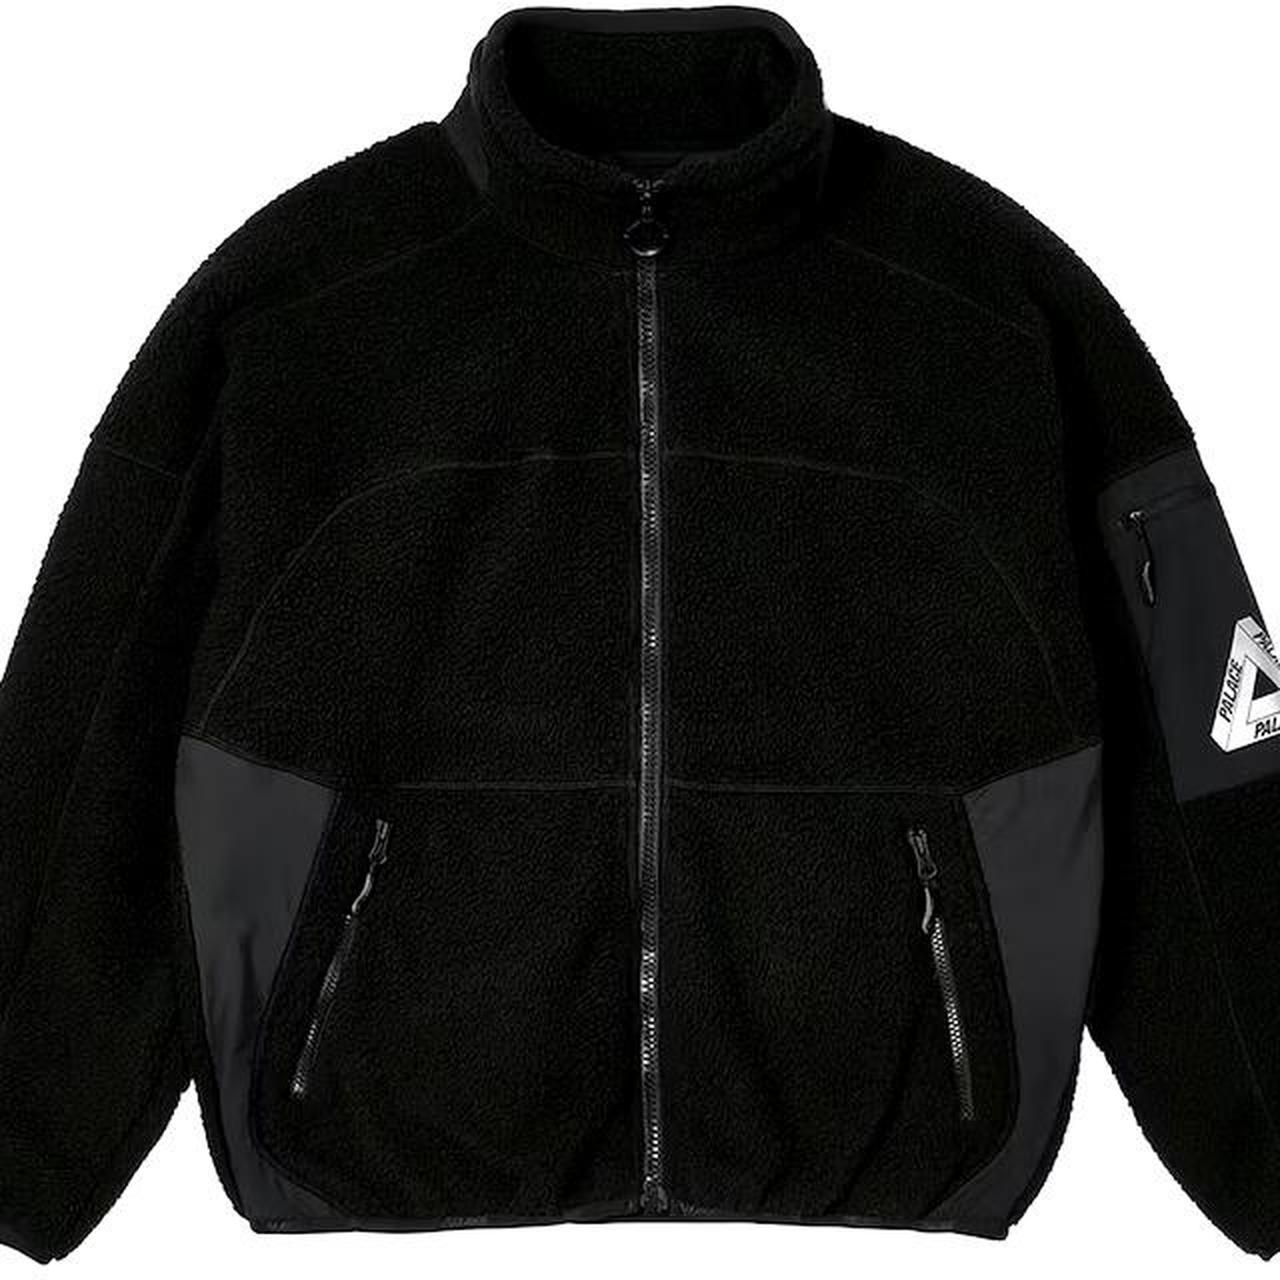 PALACE , Thermalite fleece jacket , Black , Size Medium